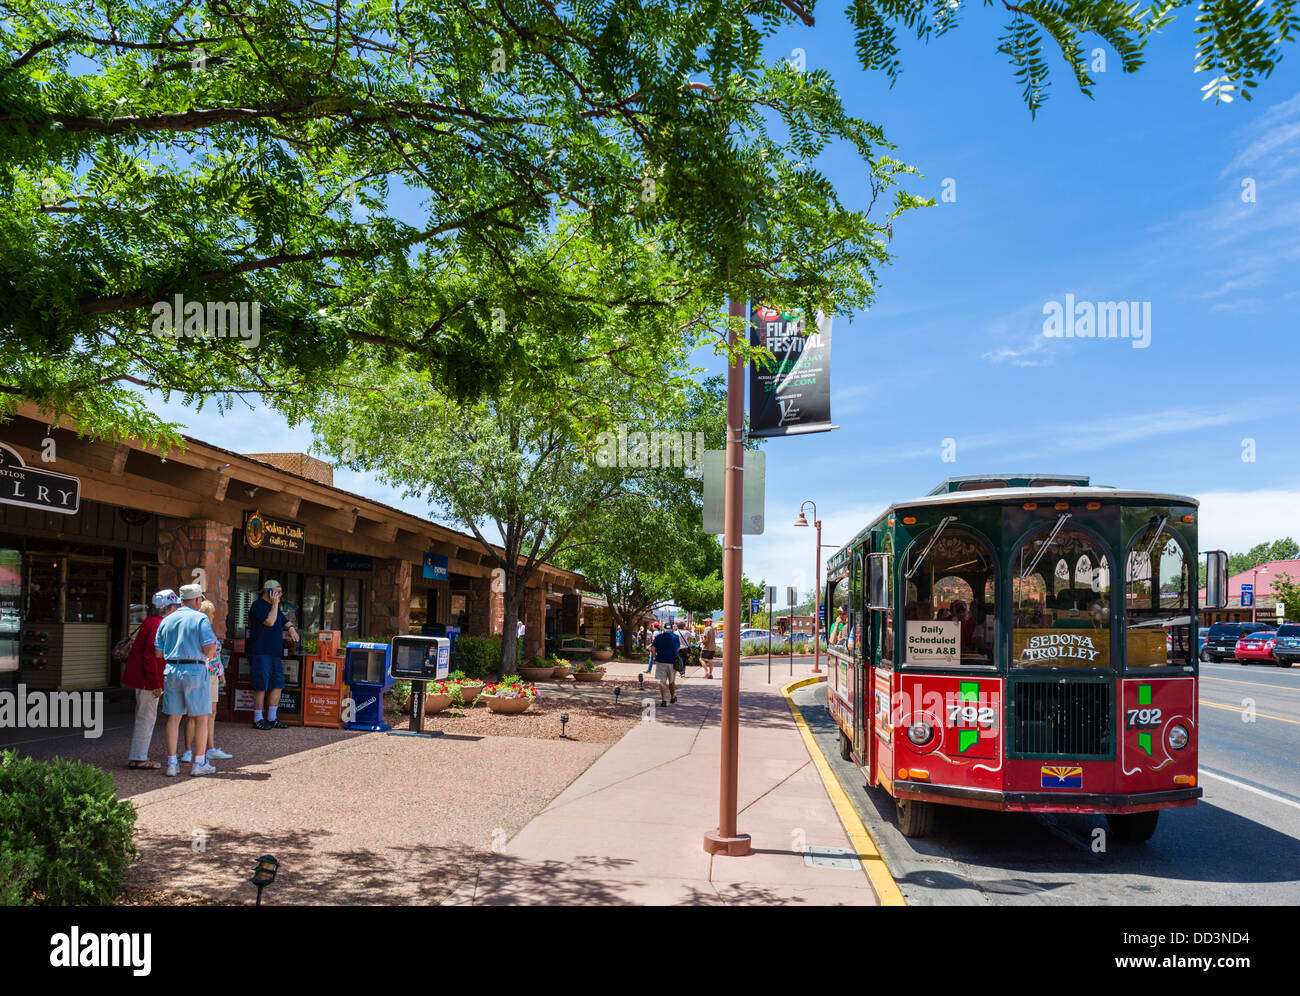 Die Sedona-Wagen auf der Main Street in der Innenstadt von Sedona, Arizona, USA Stockfoto